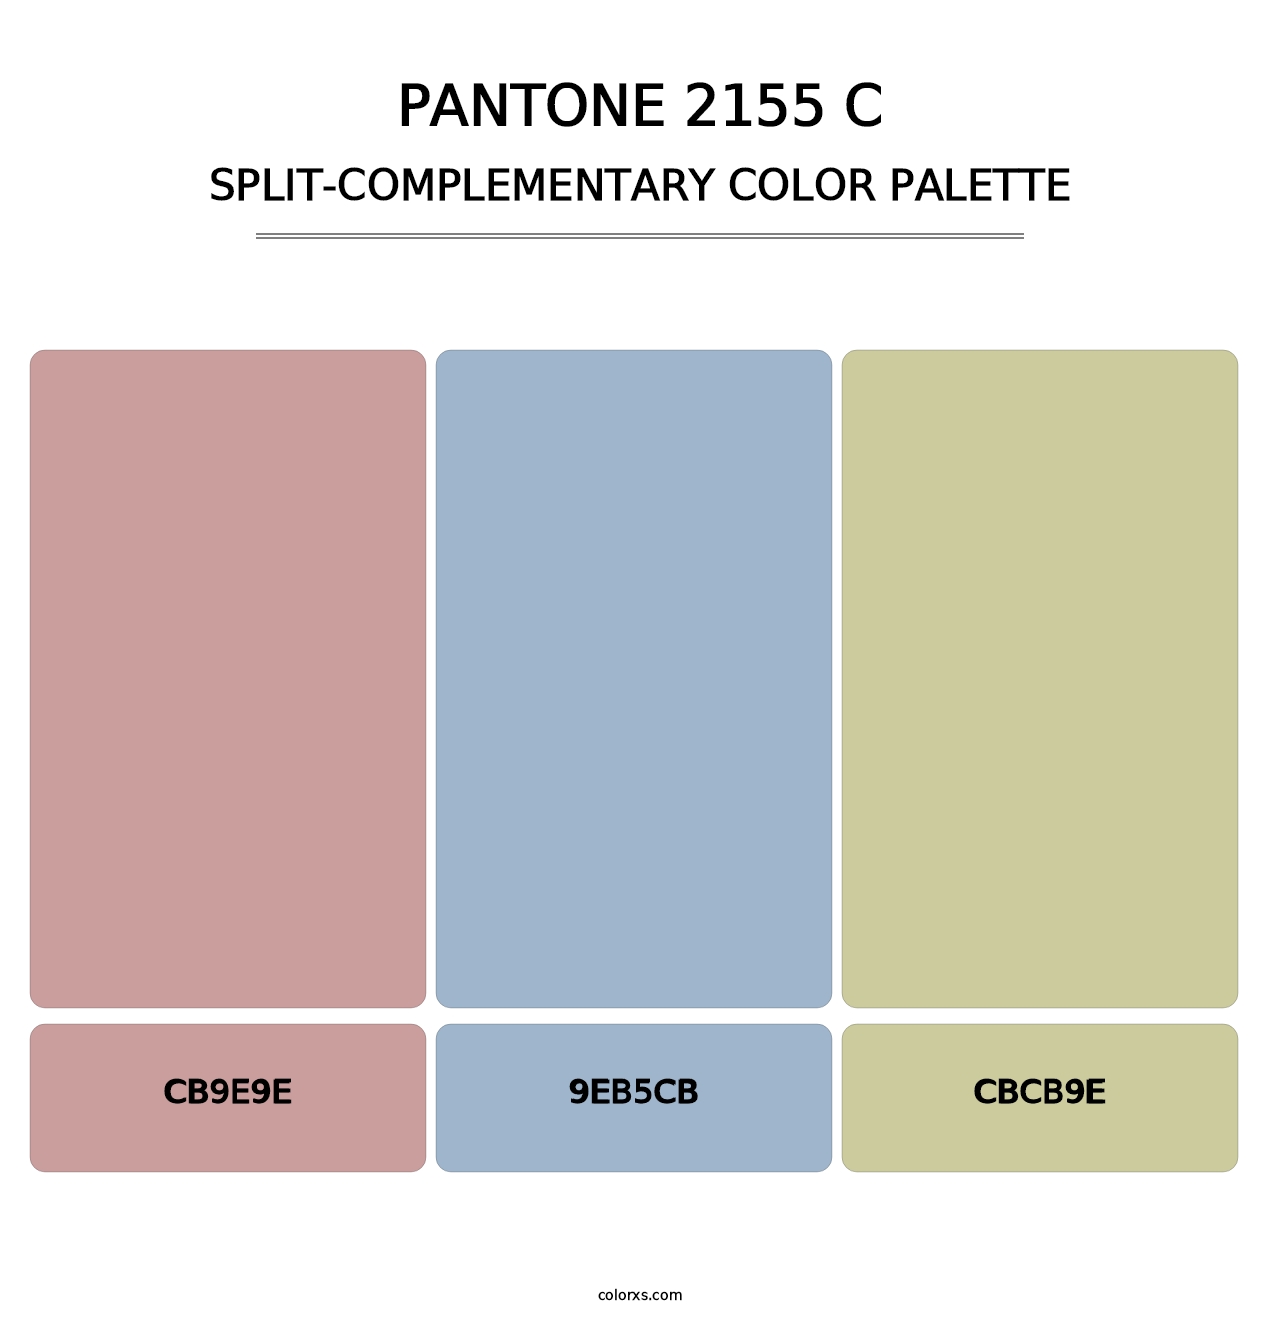 PANTONE 2155 C - Split-Complementary Color Palette